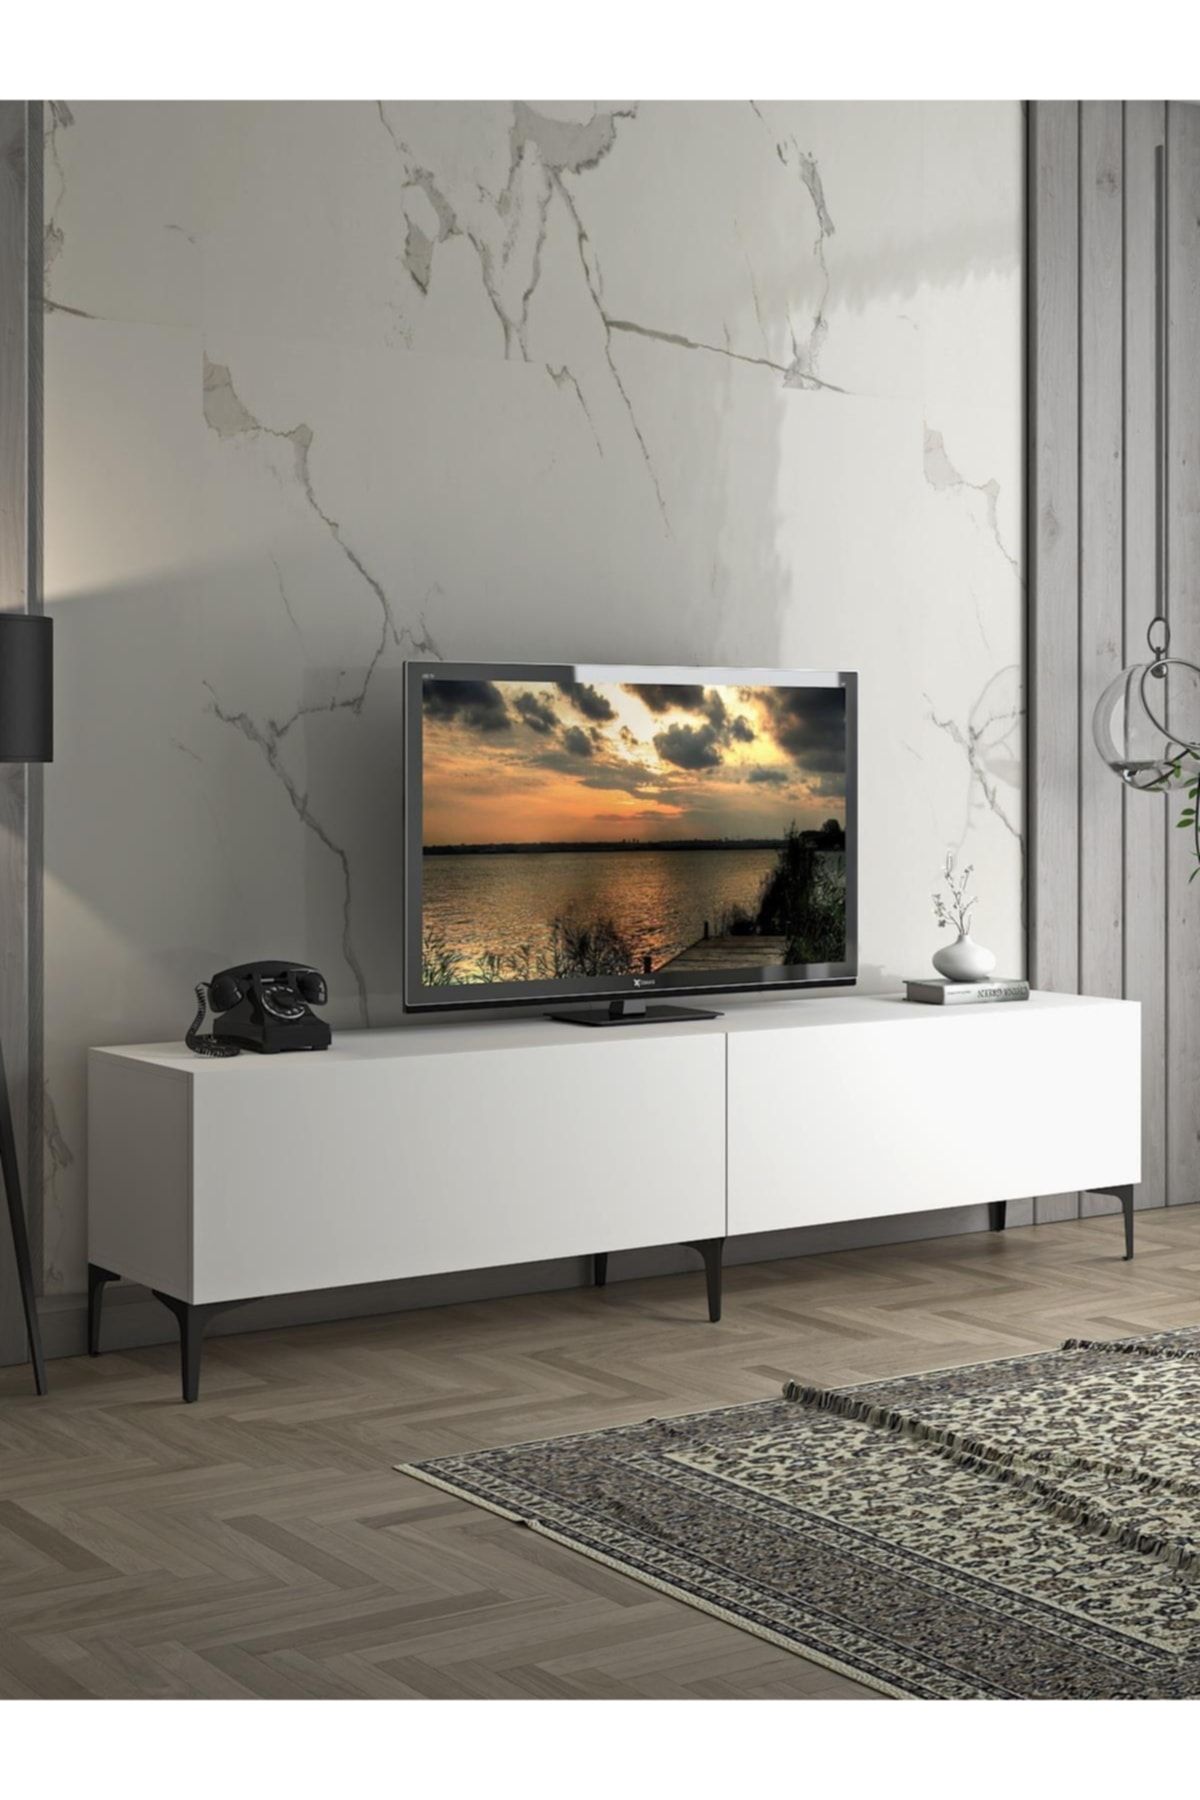 Wood'n Love Vega Premium 200 Cm Geniş Dolaplı Metal Ayaklı Tv Ünitesi - Beyaz / Siyah